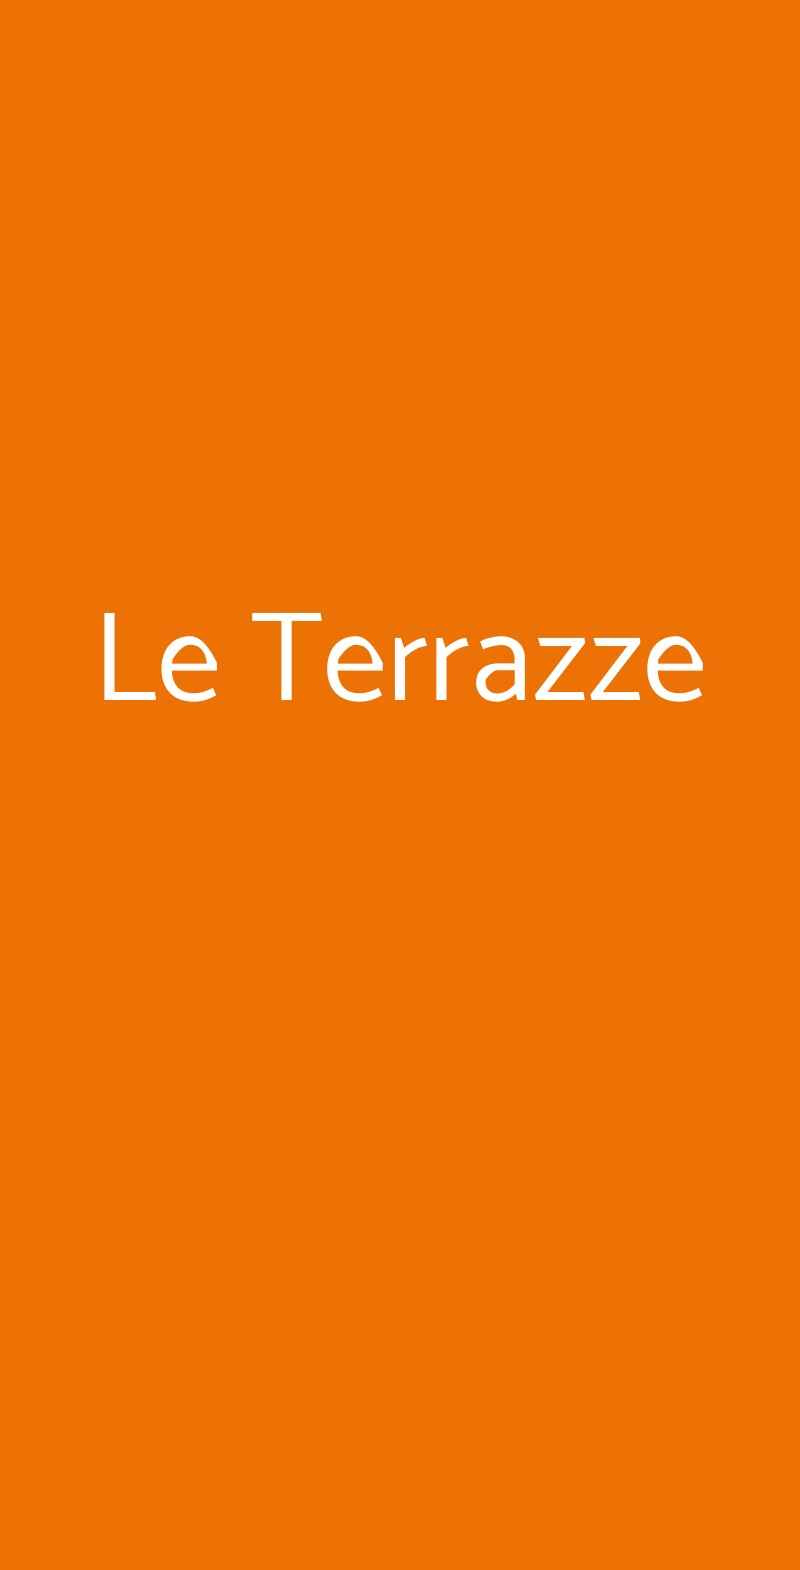 Le Terrazze Milano menù 1 pagina